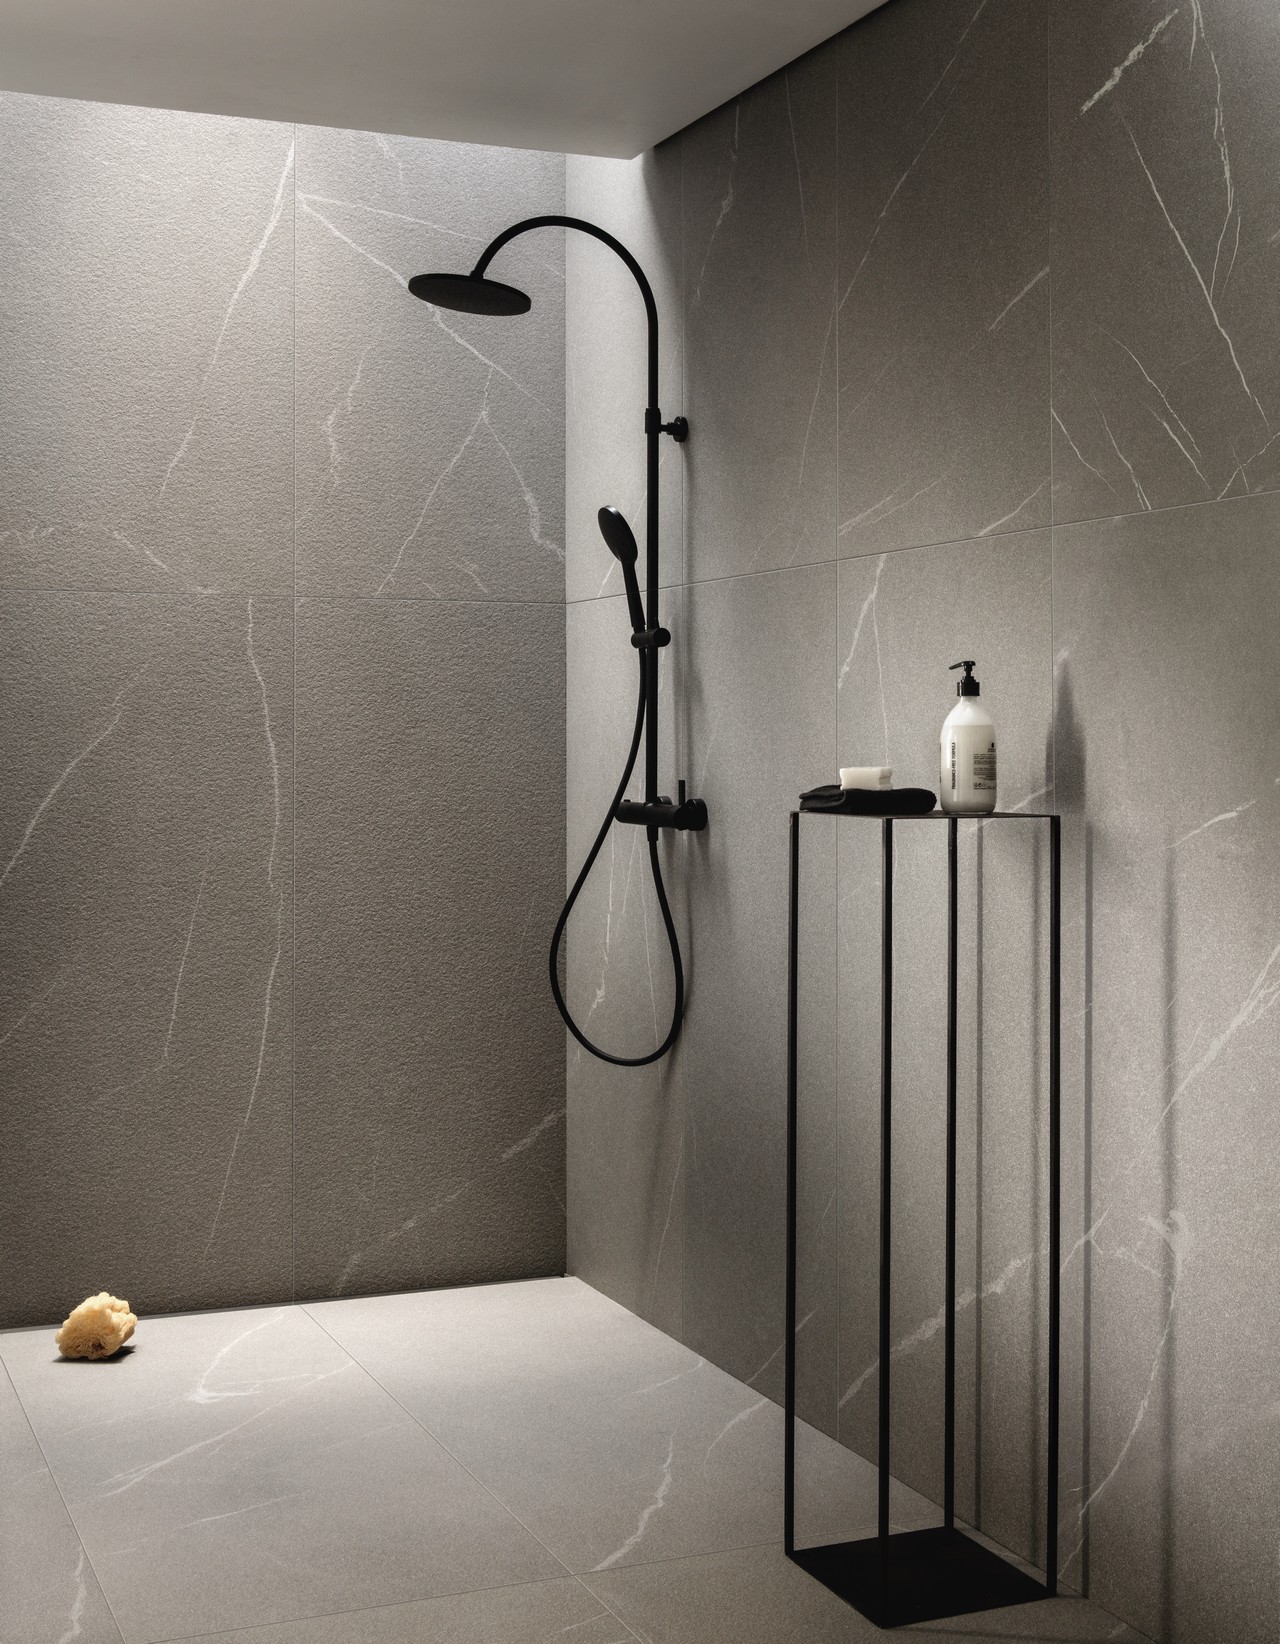 Salle de bains minimaliste avec douche en grès cérame effet pierre dans des tons de gris. - Inspirations Iperceramica